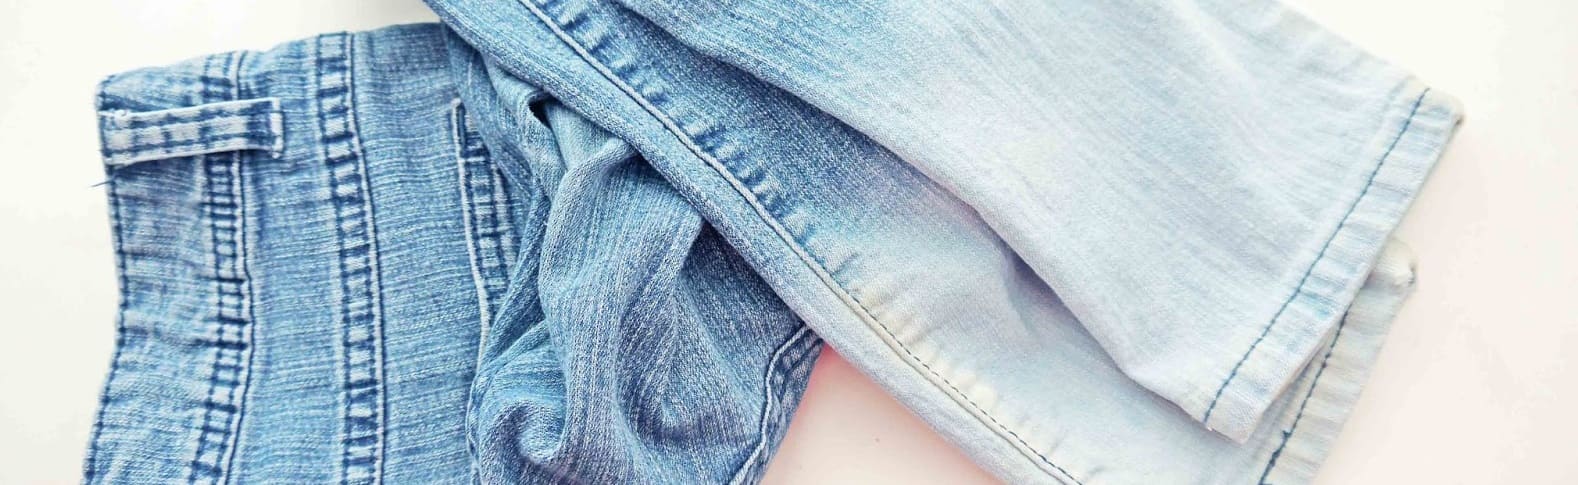 Как сделать джинсы вваренки в домашних условиях